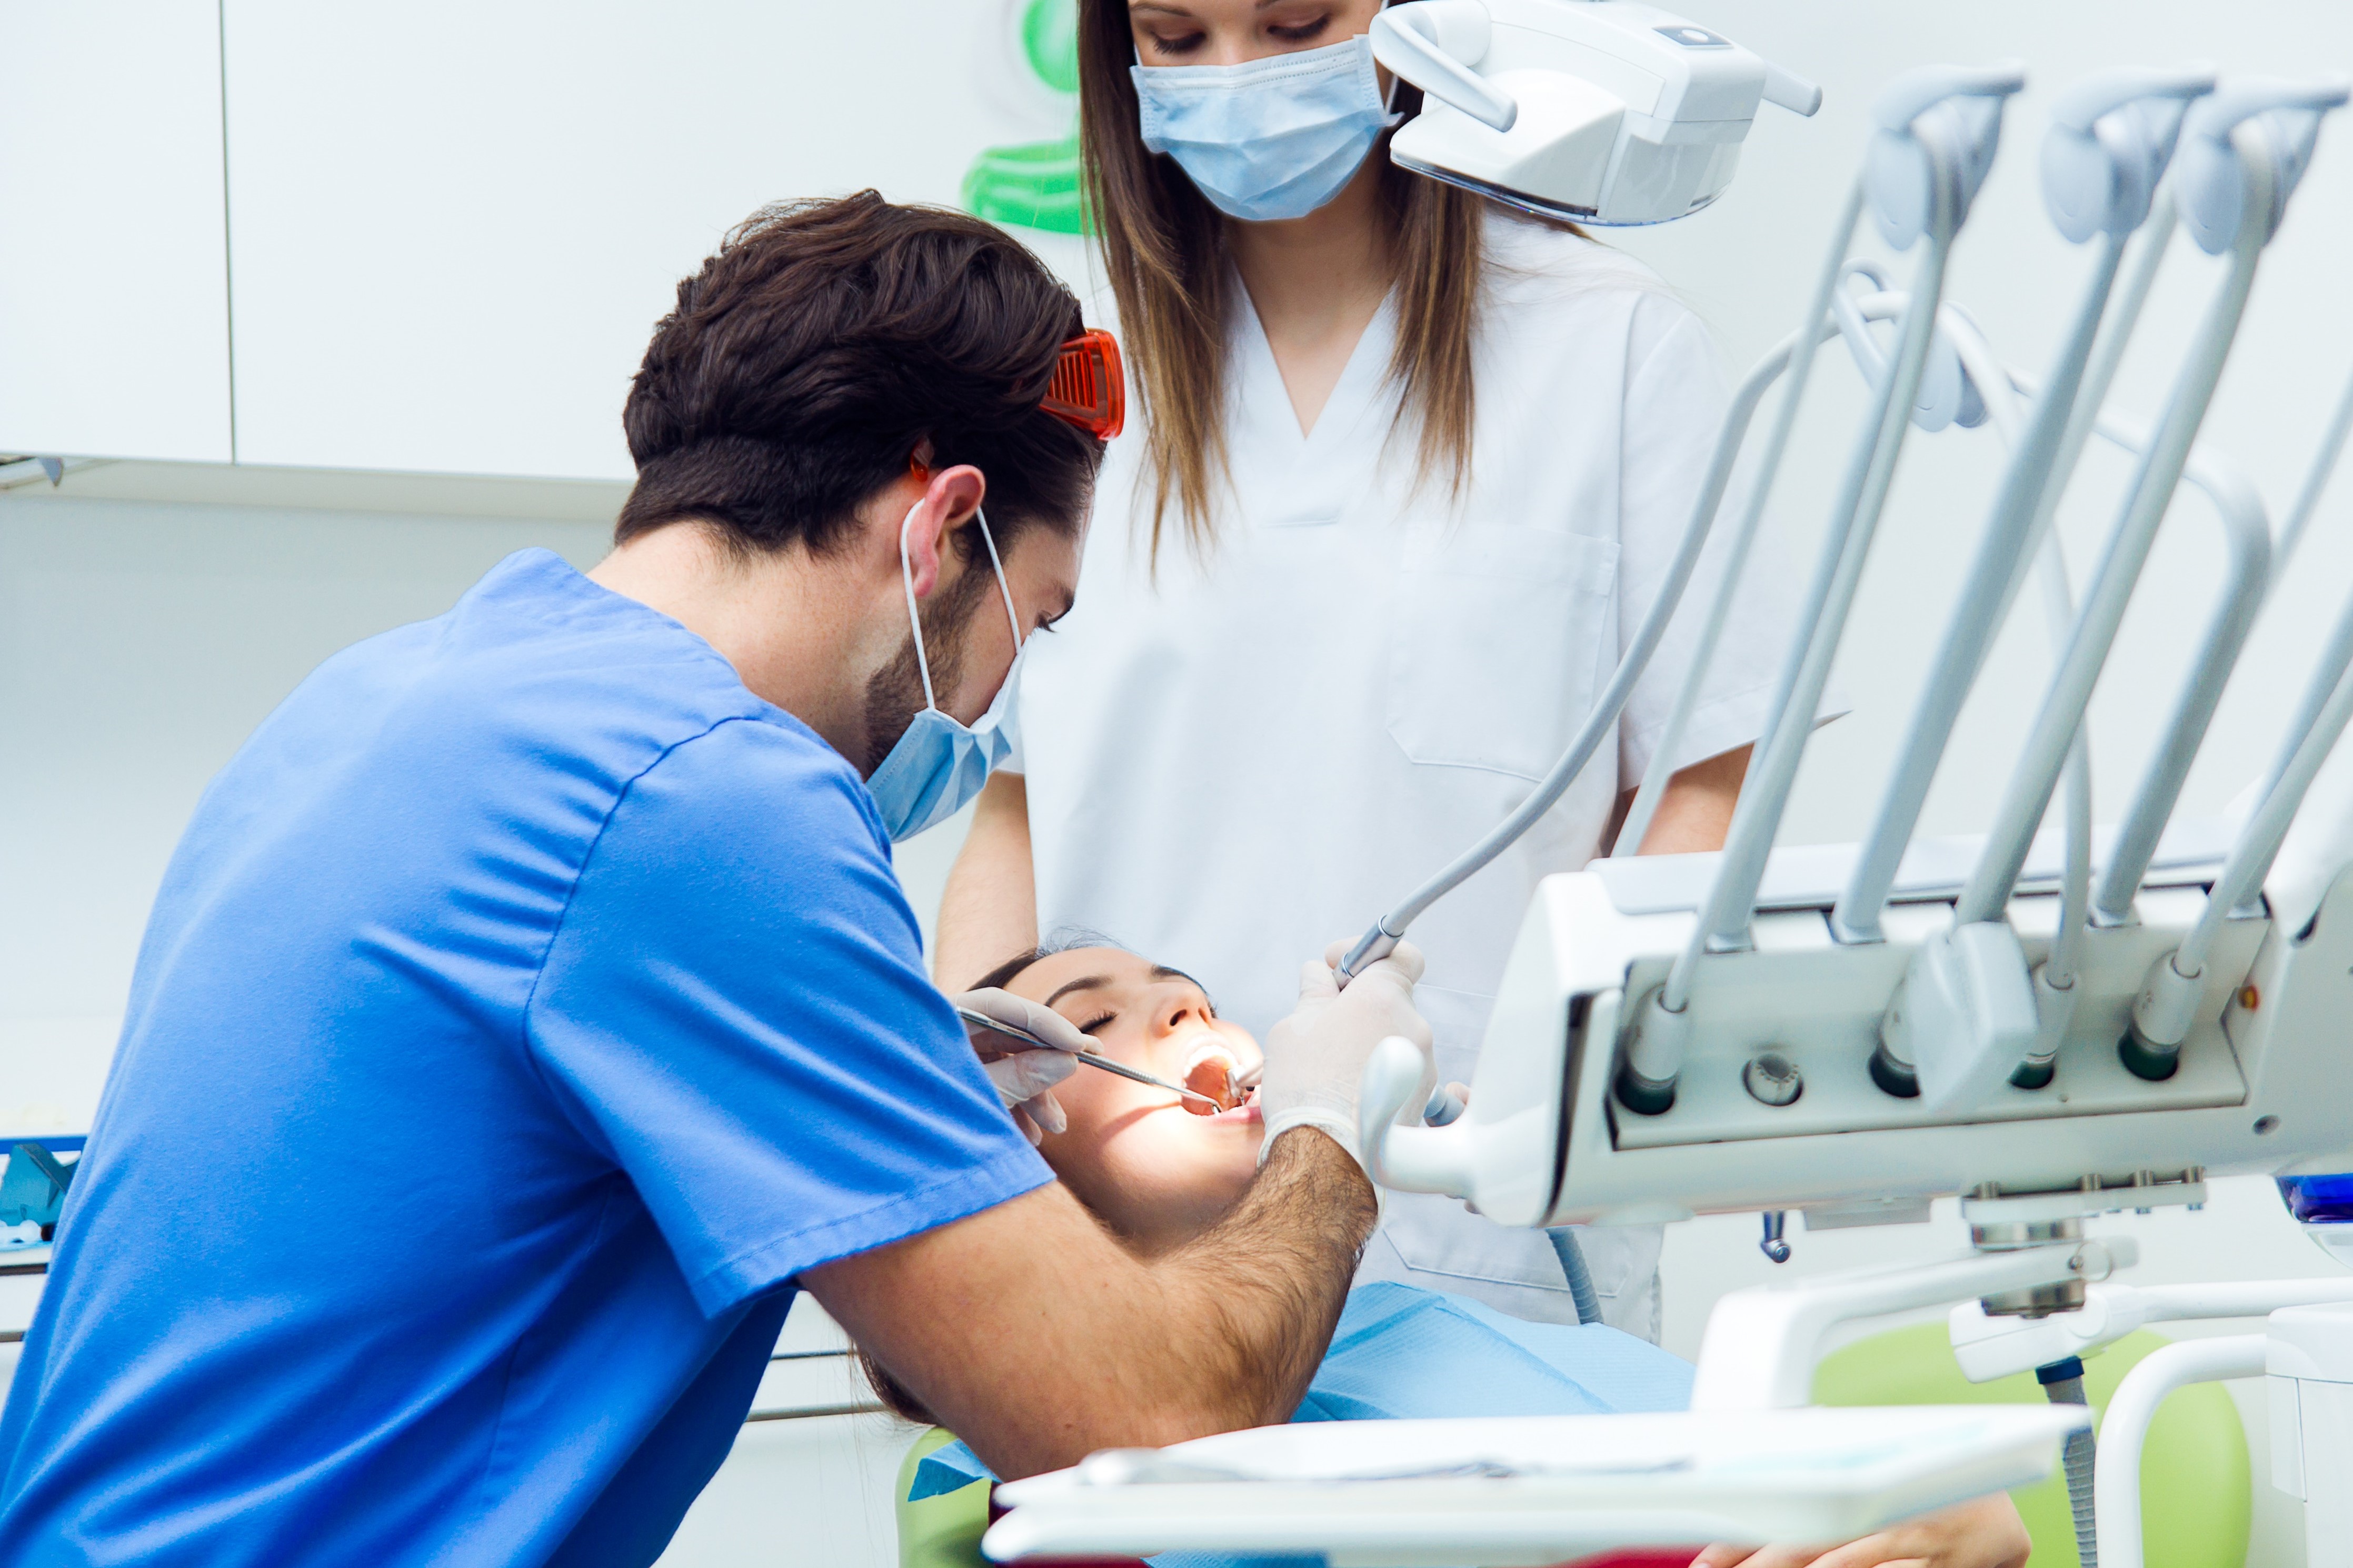 Le chirurgien dentiste et l'assistante dentaire sont exposés à de nombreux polluants dans l'air lors des soins impliquant des outils dynamiques tels que la fraiseuse ou le détartreur